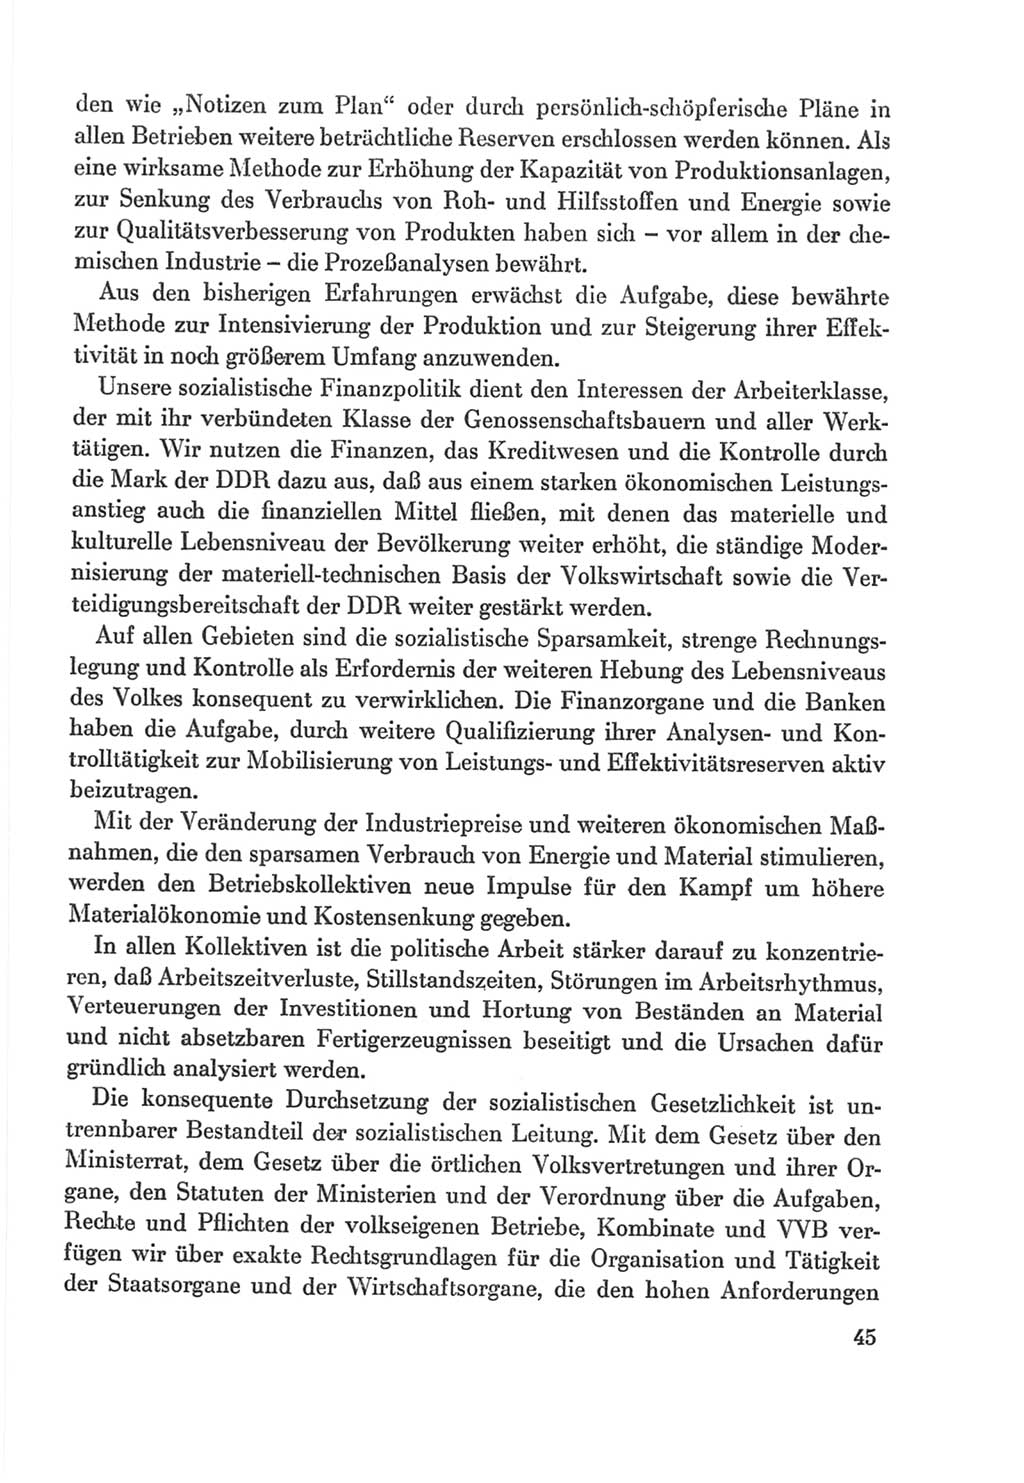 Protokoll der Verhandlungen des Ⅸ. Parteitages der Sozialistischen Einheitspartei Deutschlands (SED) [Deutsche Demokratische Republik (DDR)] 1976, Band 2, Seite 45 (Prot. Verh. Ⅸ. PT SED DDR 1976, Bd. 2, S. 45)